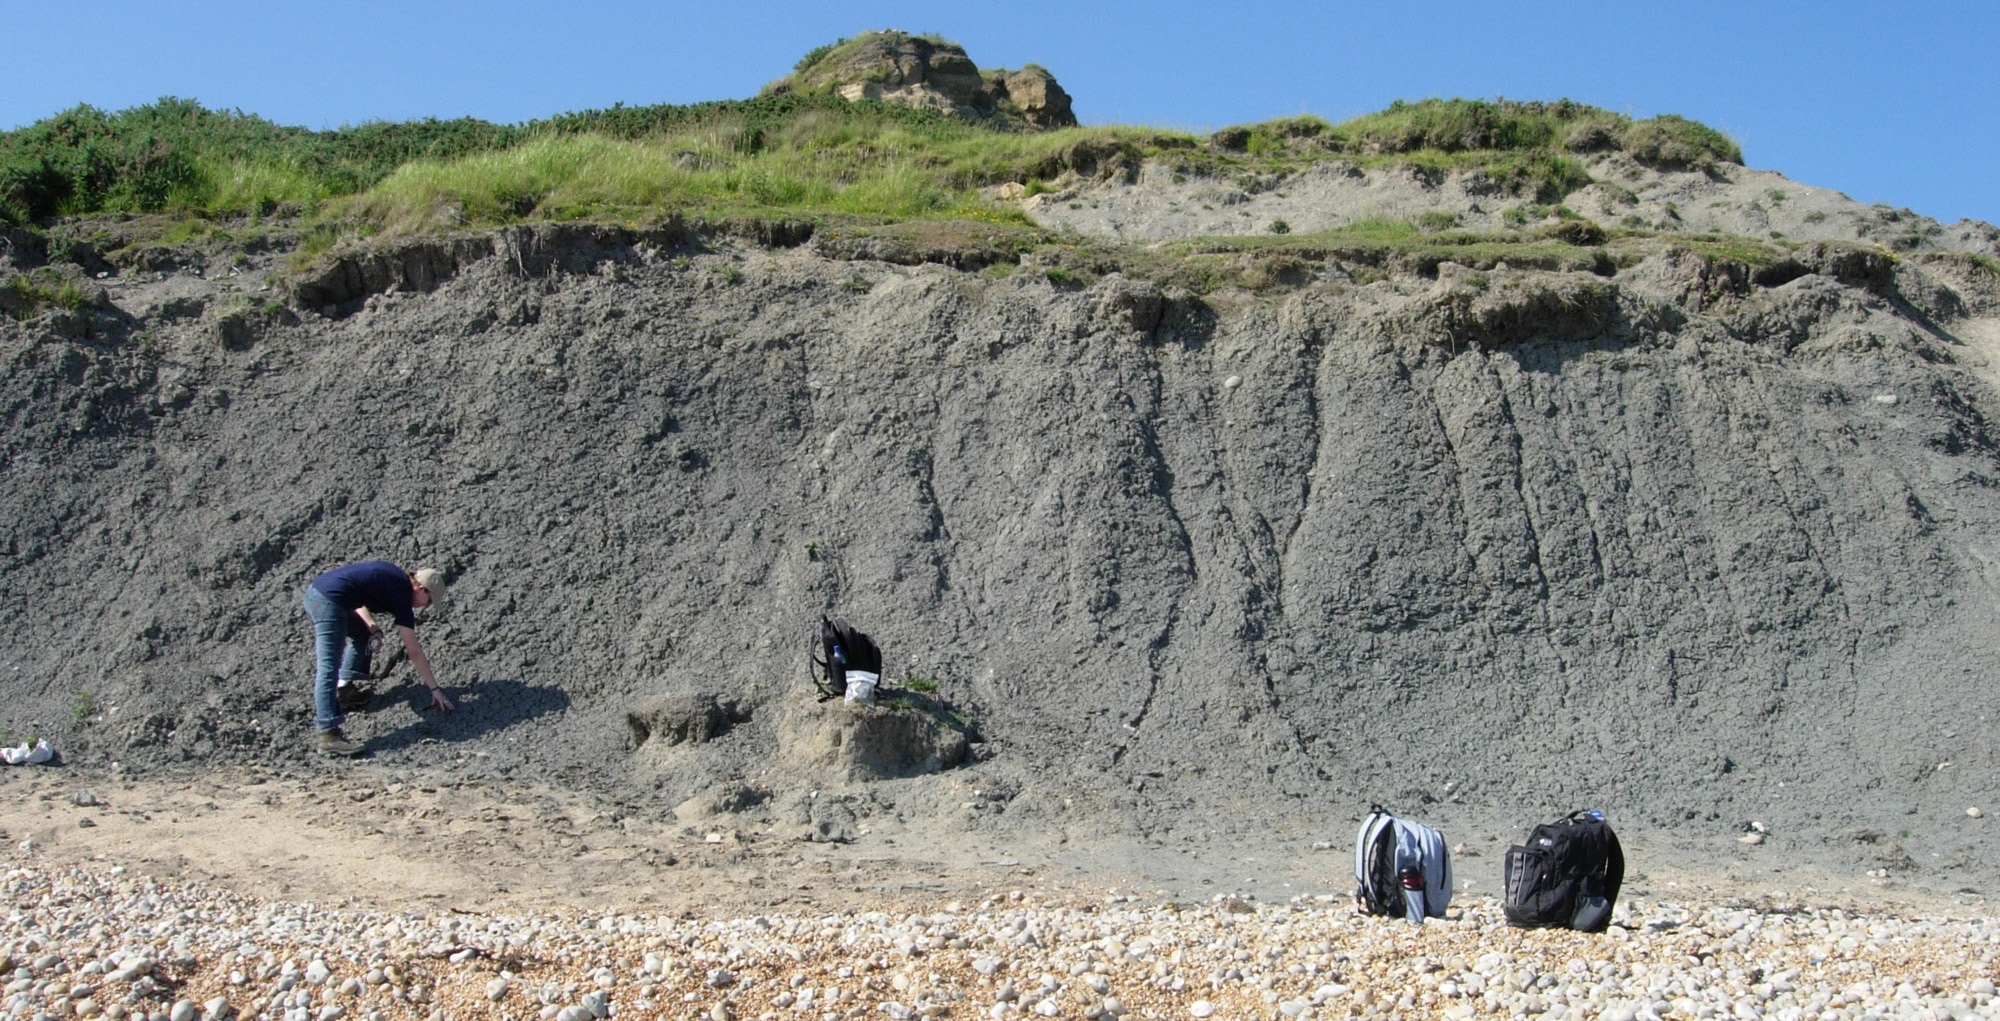 Sedimenty geologického souvrství Oxford Clay na lokalitě v blízkosti města Weymouth v Dorsetu. Právě v této oblasti byly v 19. století objeveny první fosilie metriakantosaura a mnoha jeho současníků, žijících zde v období před zhruba 160 miliony let.